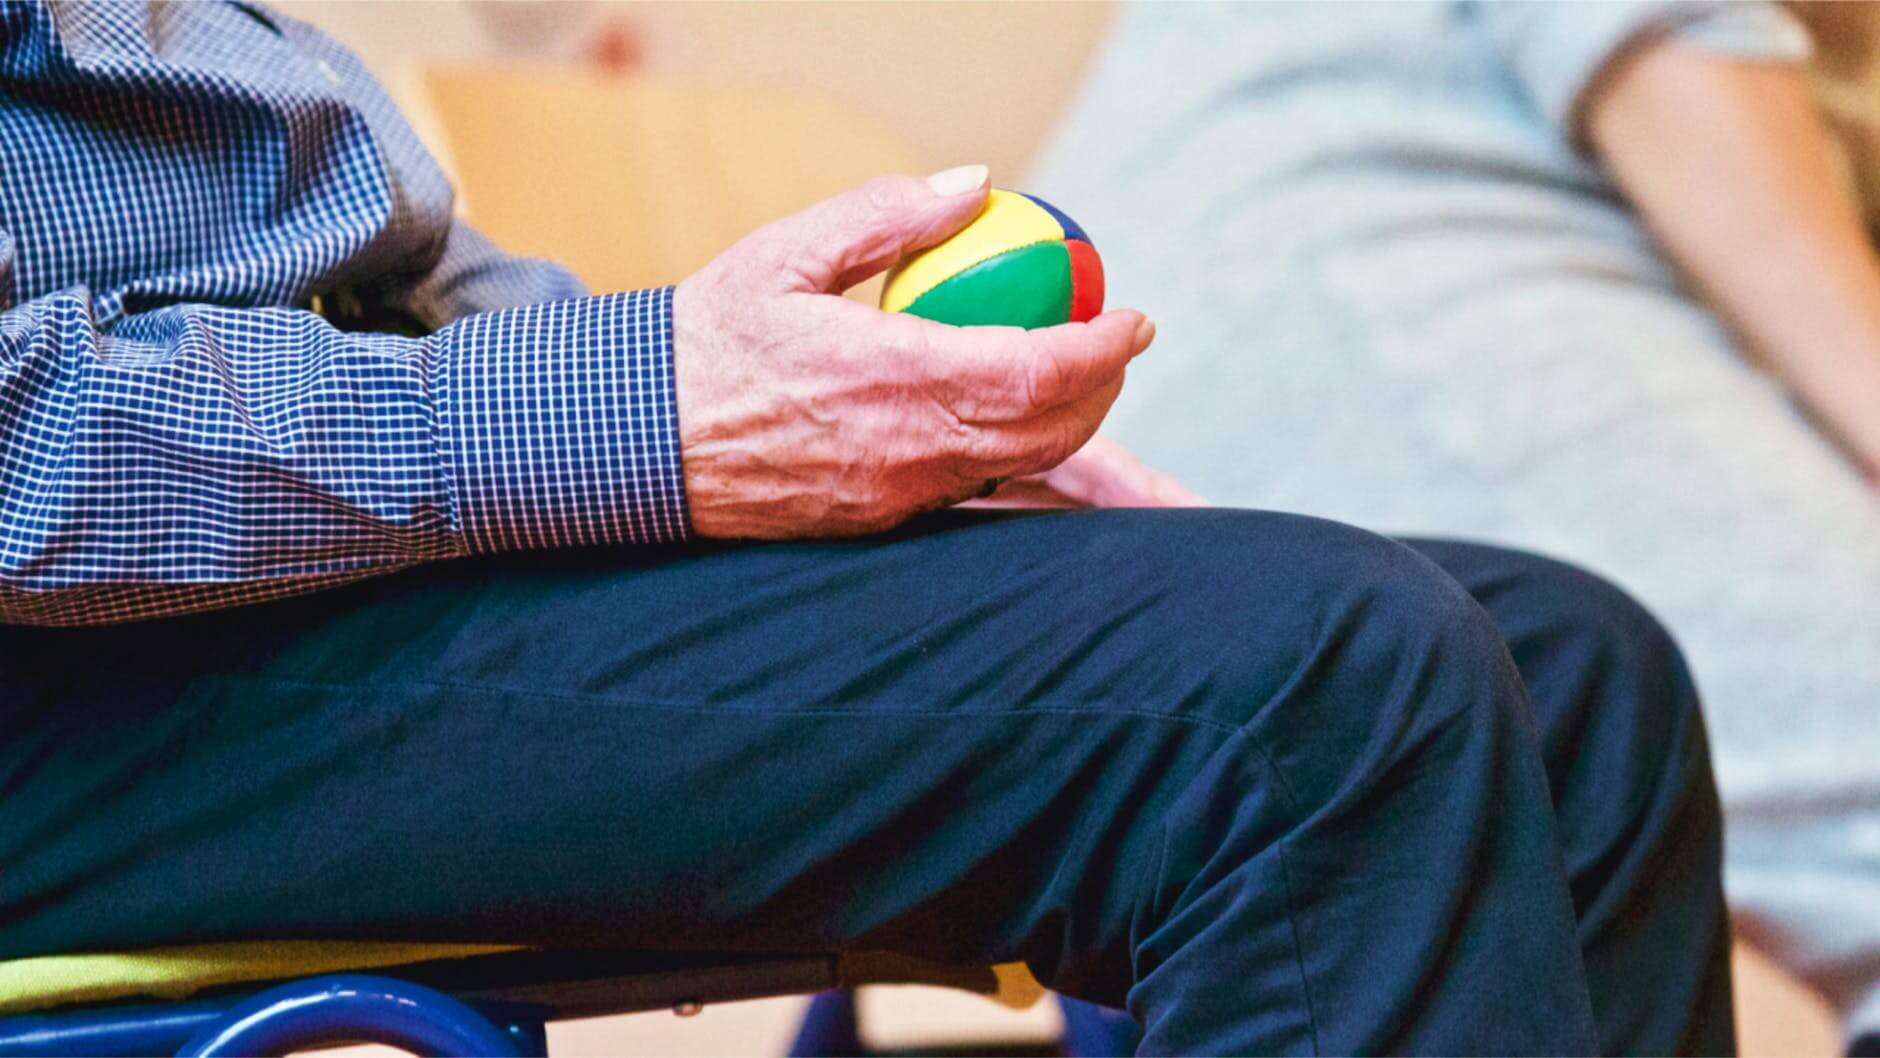 Persona mayor sentada con una pelota en la mano terapia ocupacional